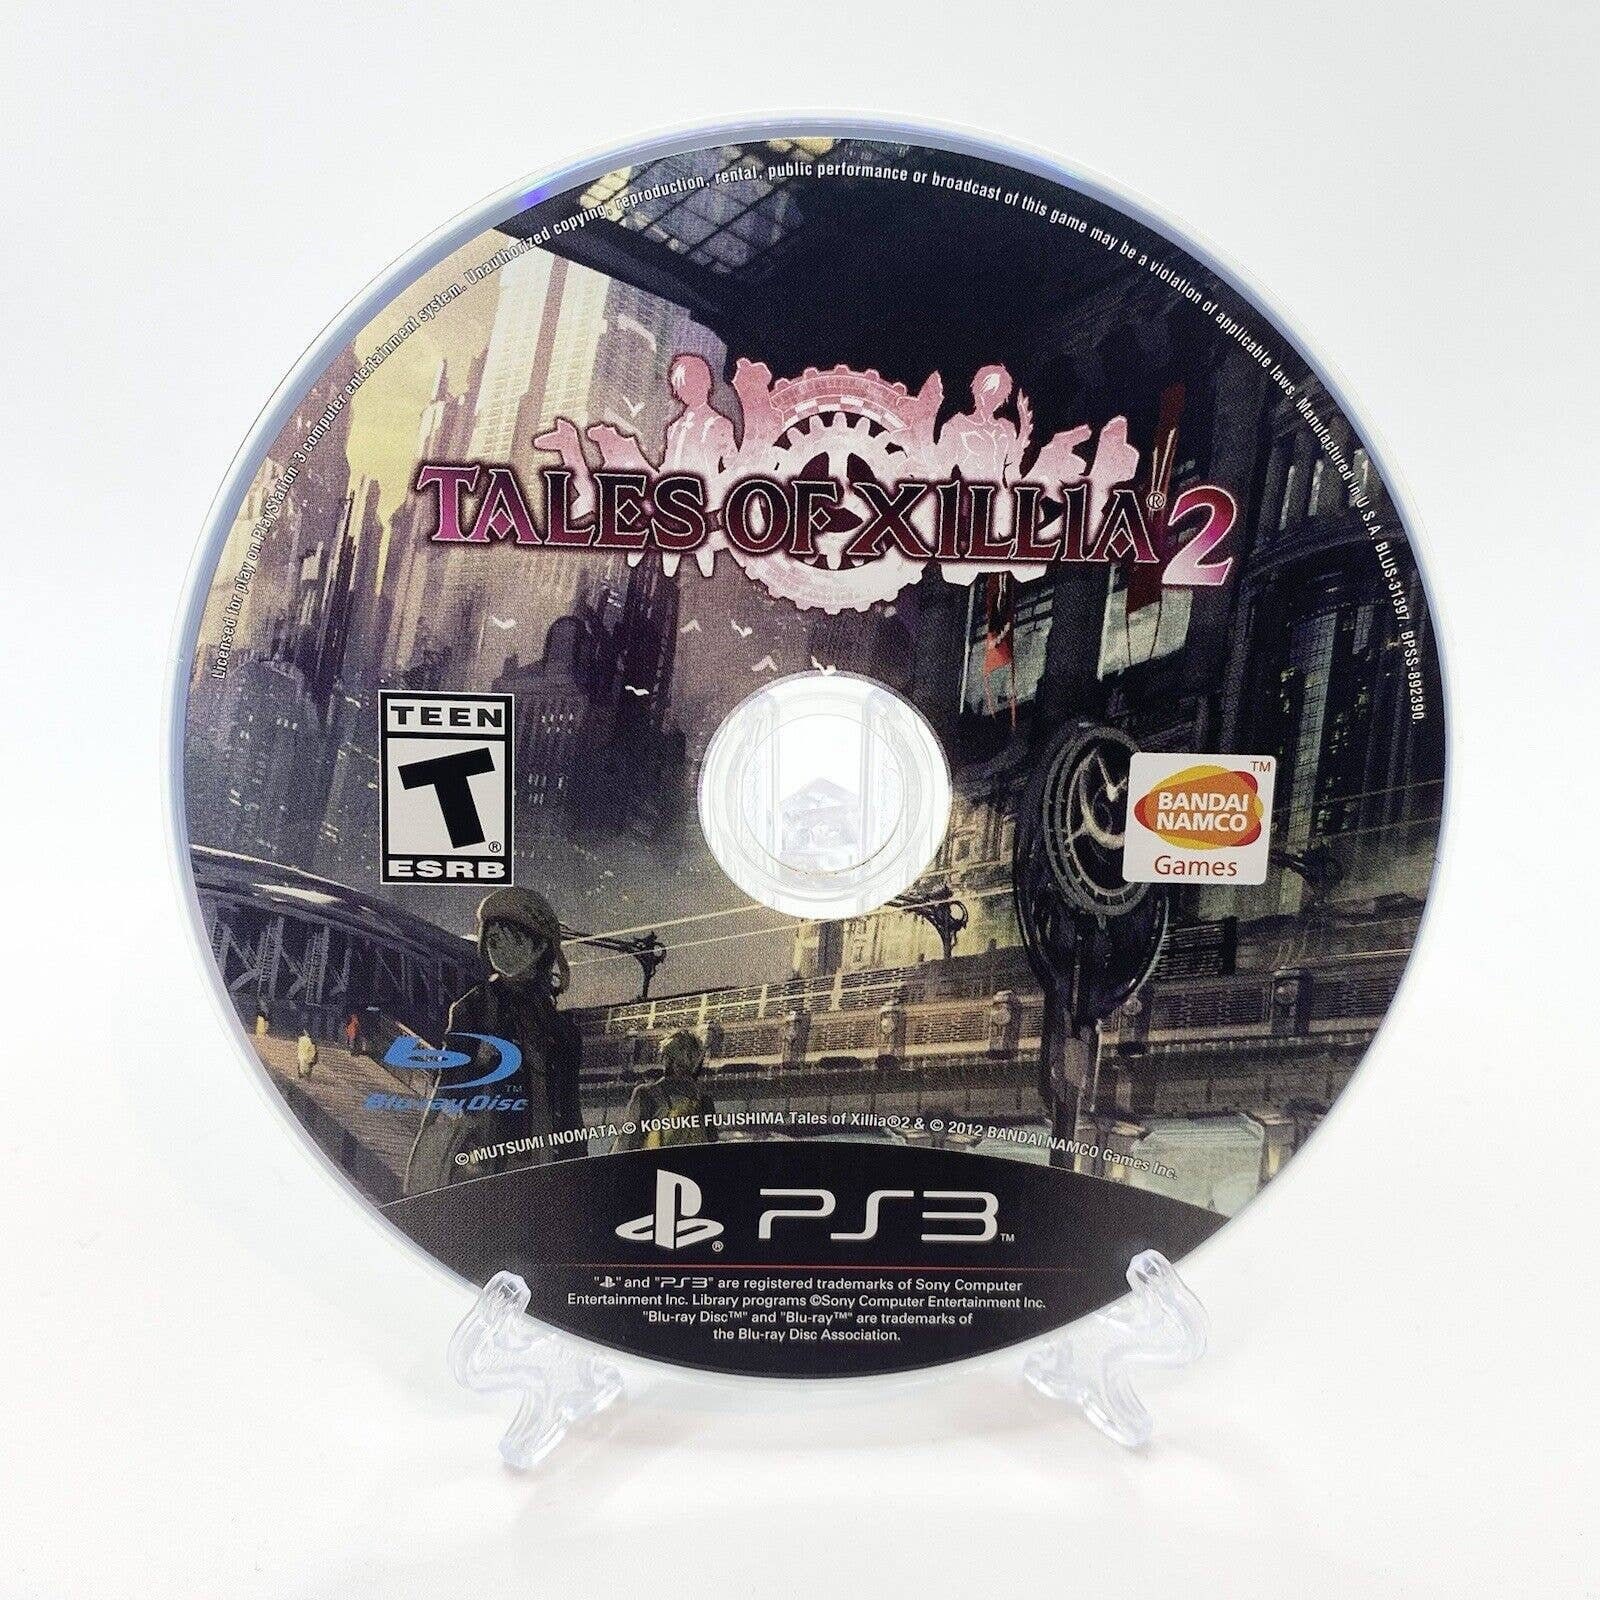 Minecraft: PlayStation 3 Edition (PlayStation 3, PS3, 2014) CIB